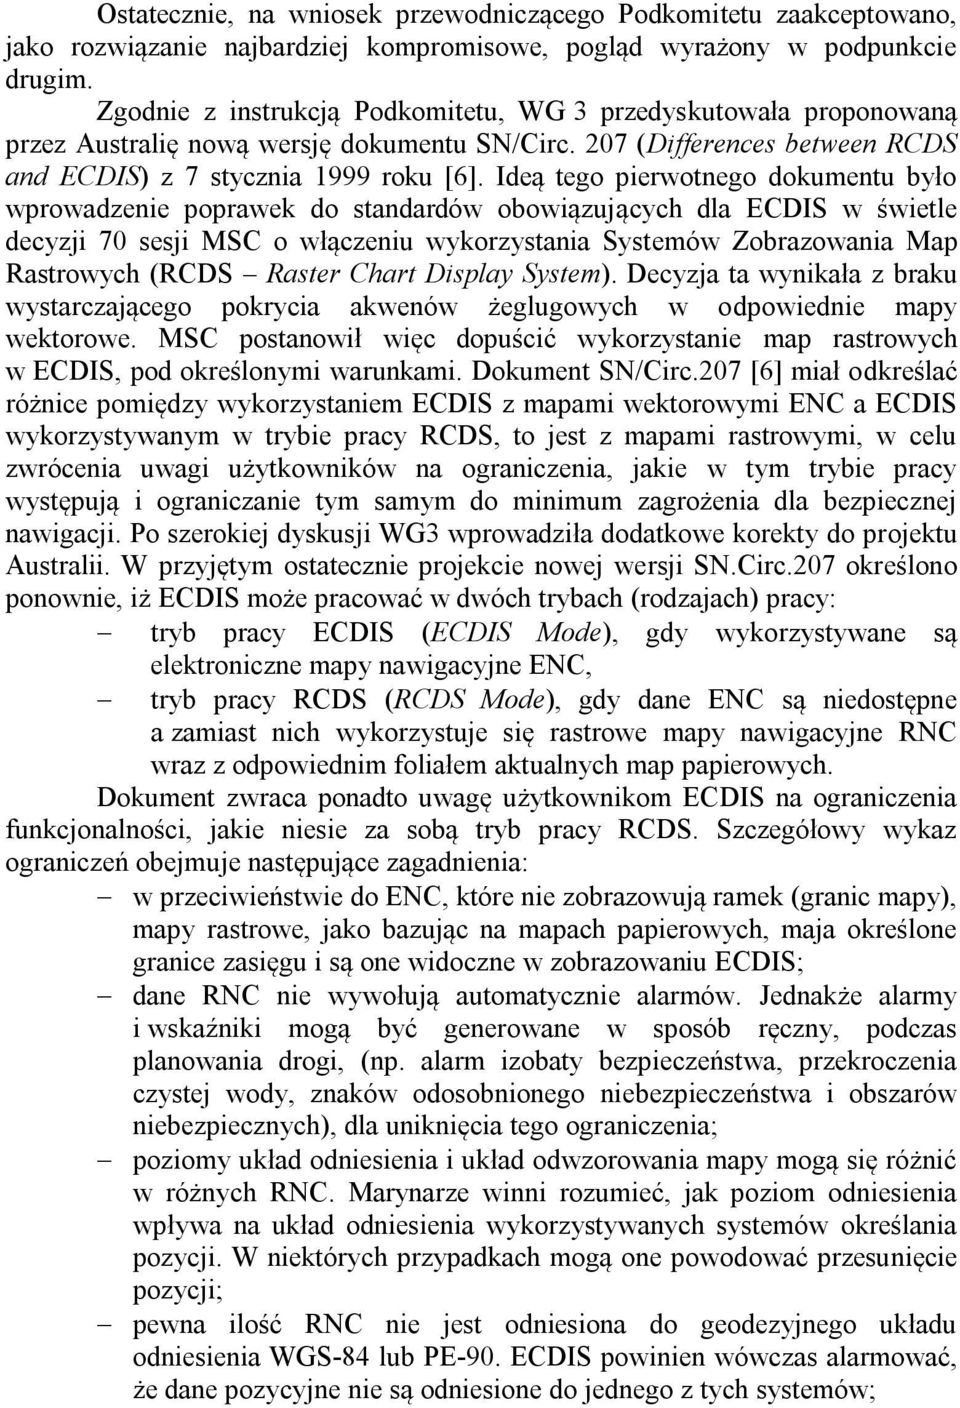 Ideą tego pierwotnego dokumentu było wprowadzenie poprawek do standardów obowiązujących dla ECDIS w świetle decyzji 70 sesji MSC o włączeniu wykorzystania Systemów Zobrazowania Map Rastrowych (RCDS